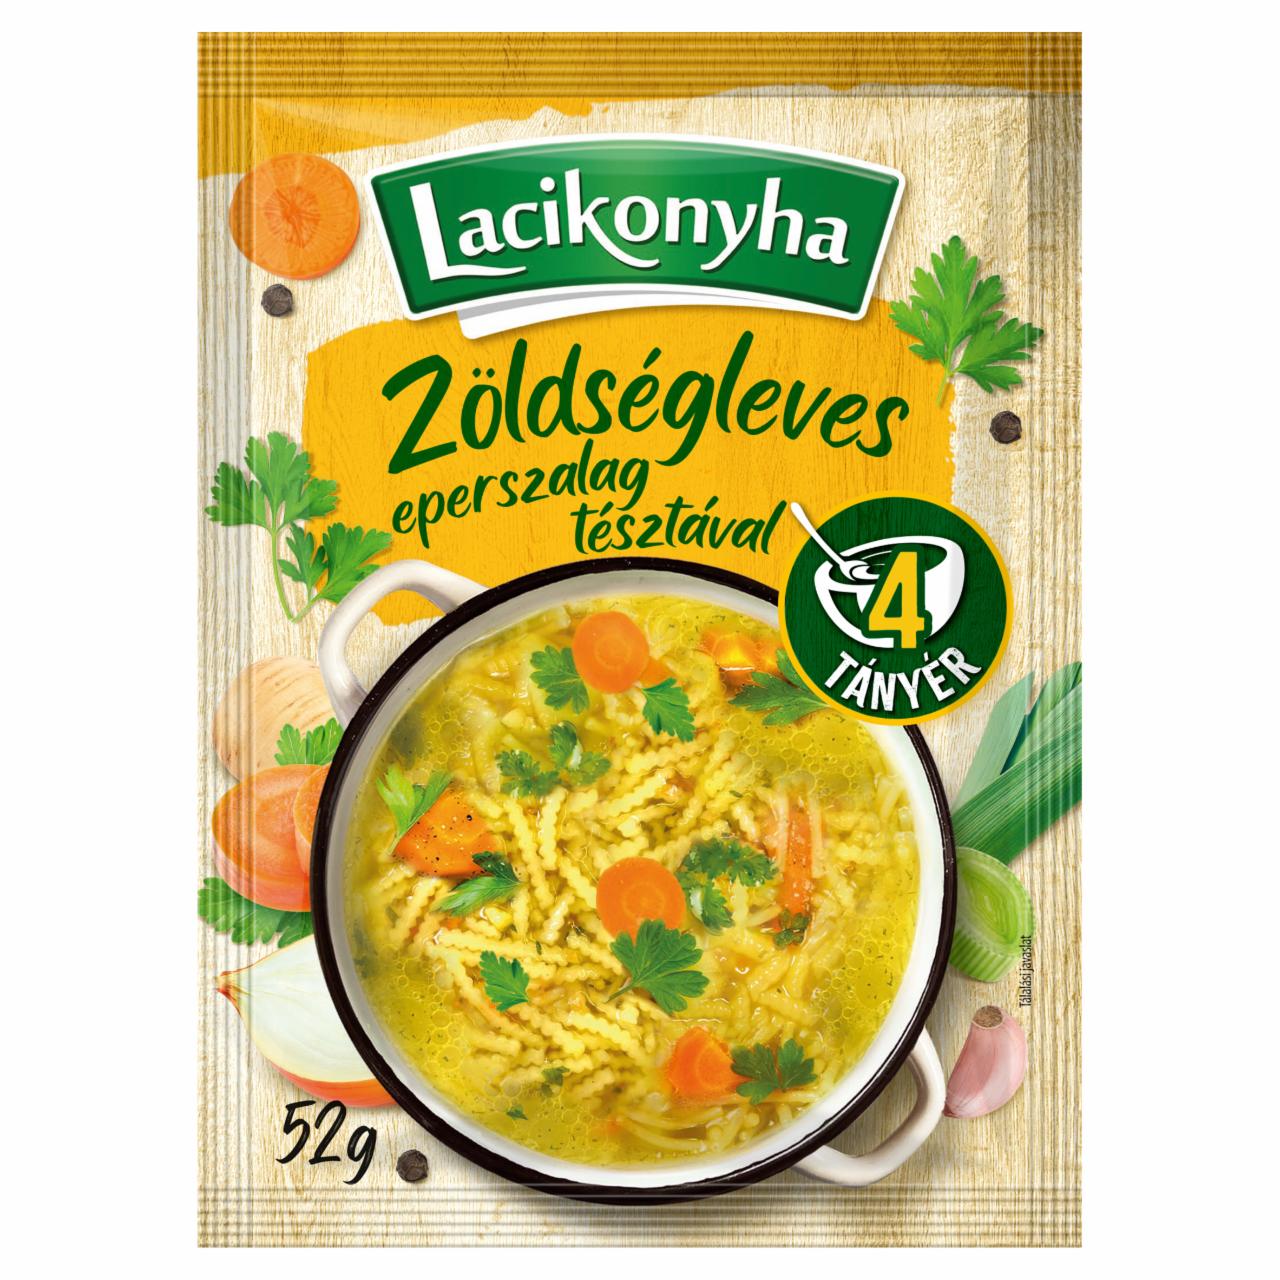 Képek - Lacikonyha zöldségleves eperszalag tésztával 52 g